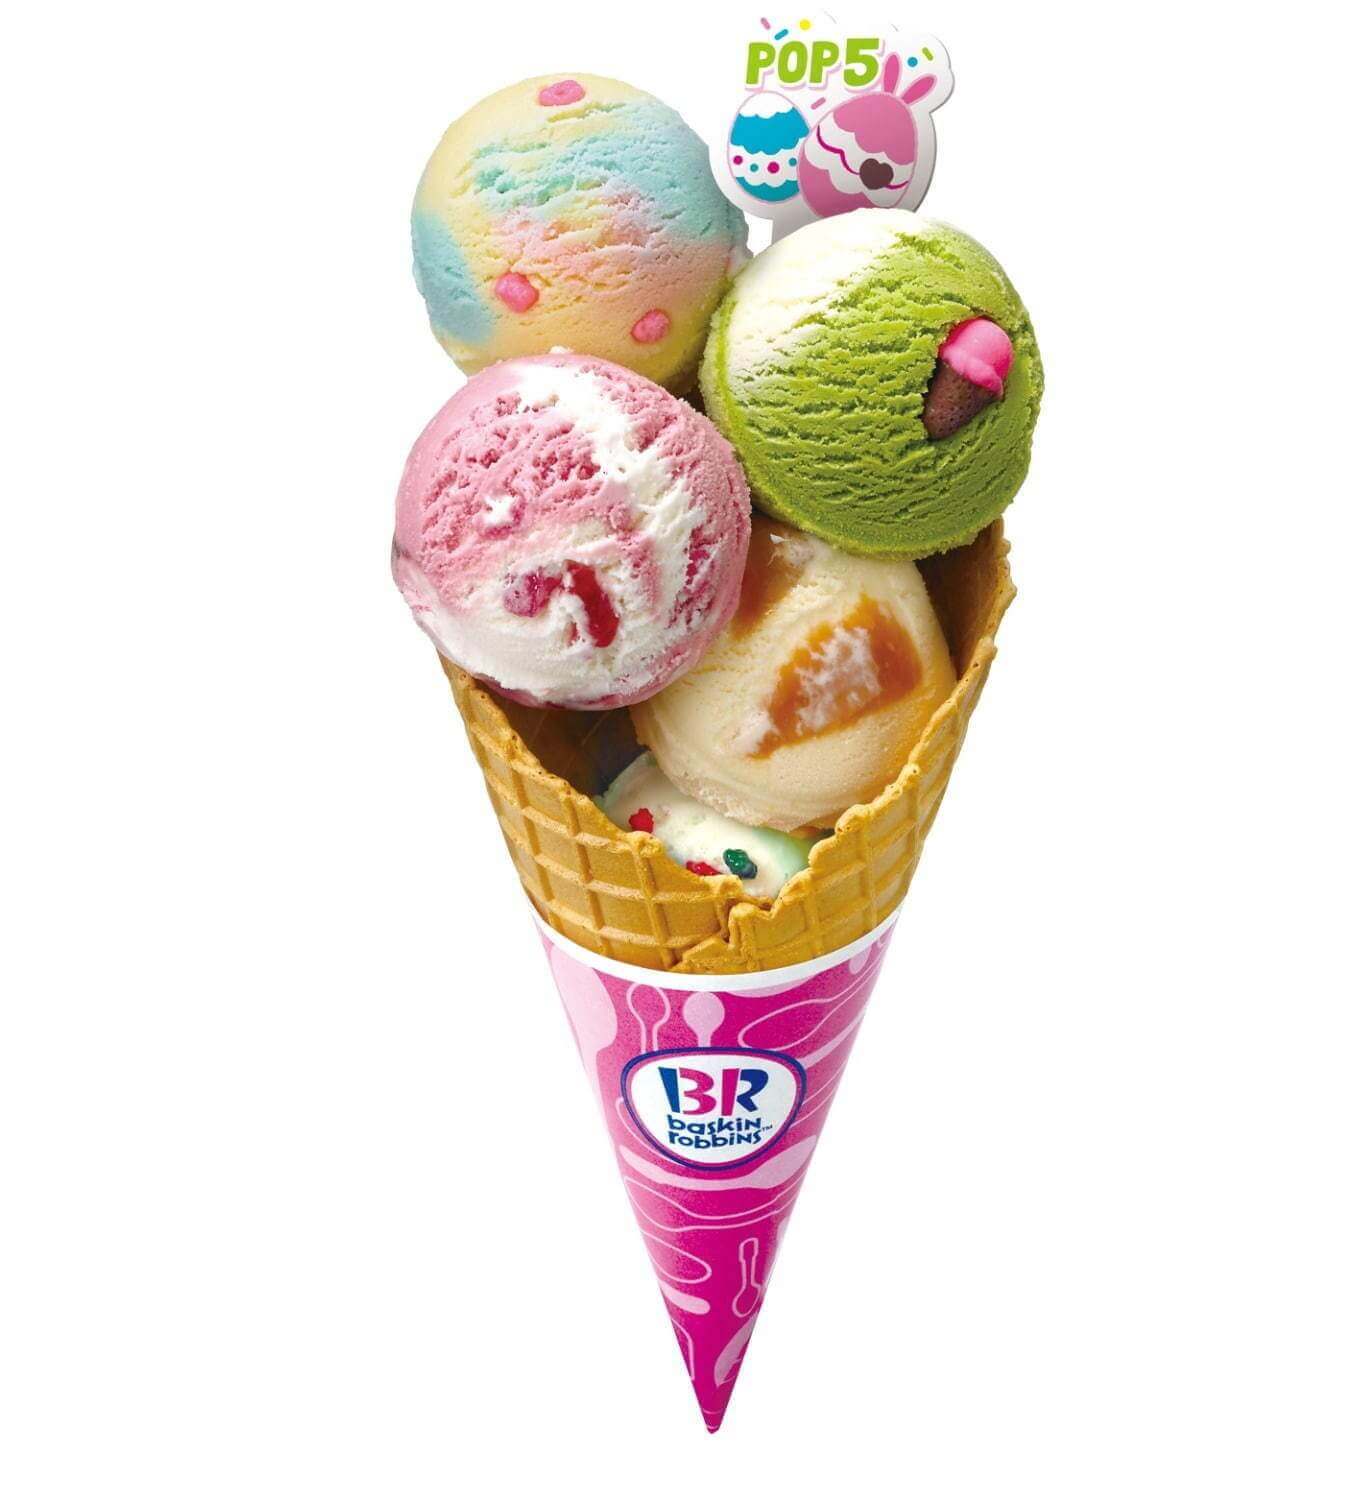 サーティワン アイスクリームの『ポップ5』